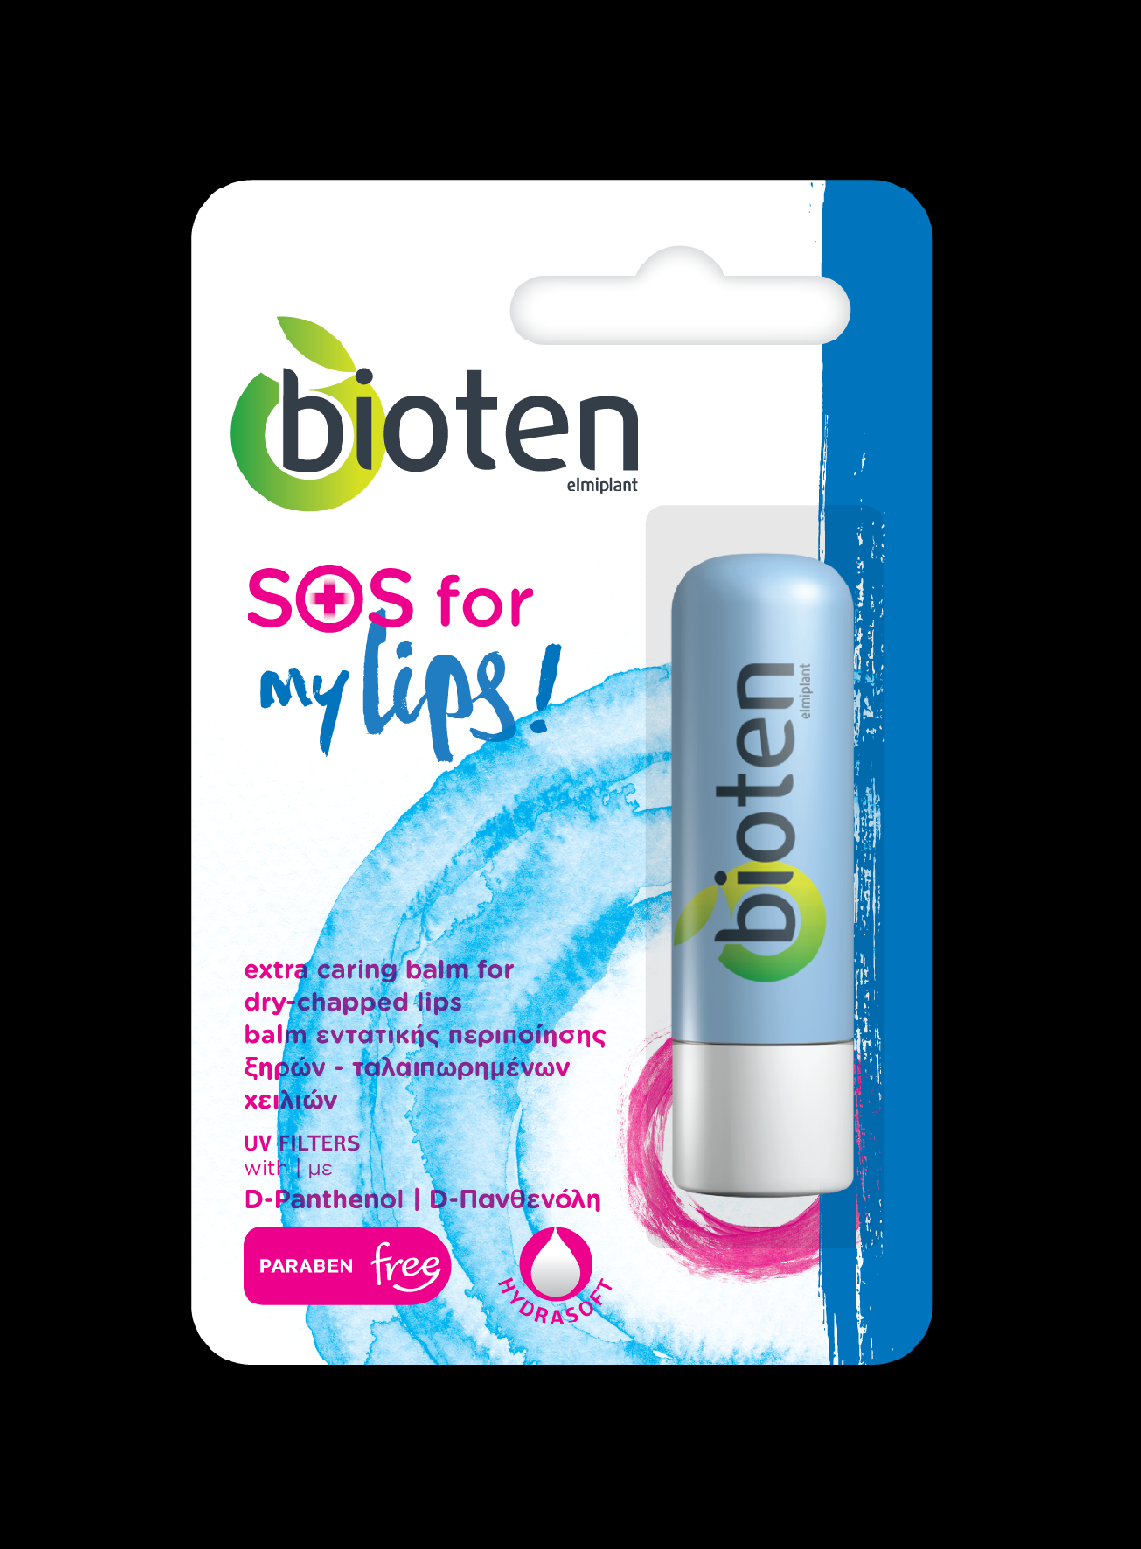 bioten SOS my lips